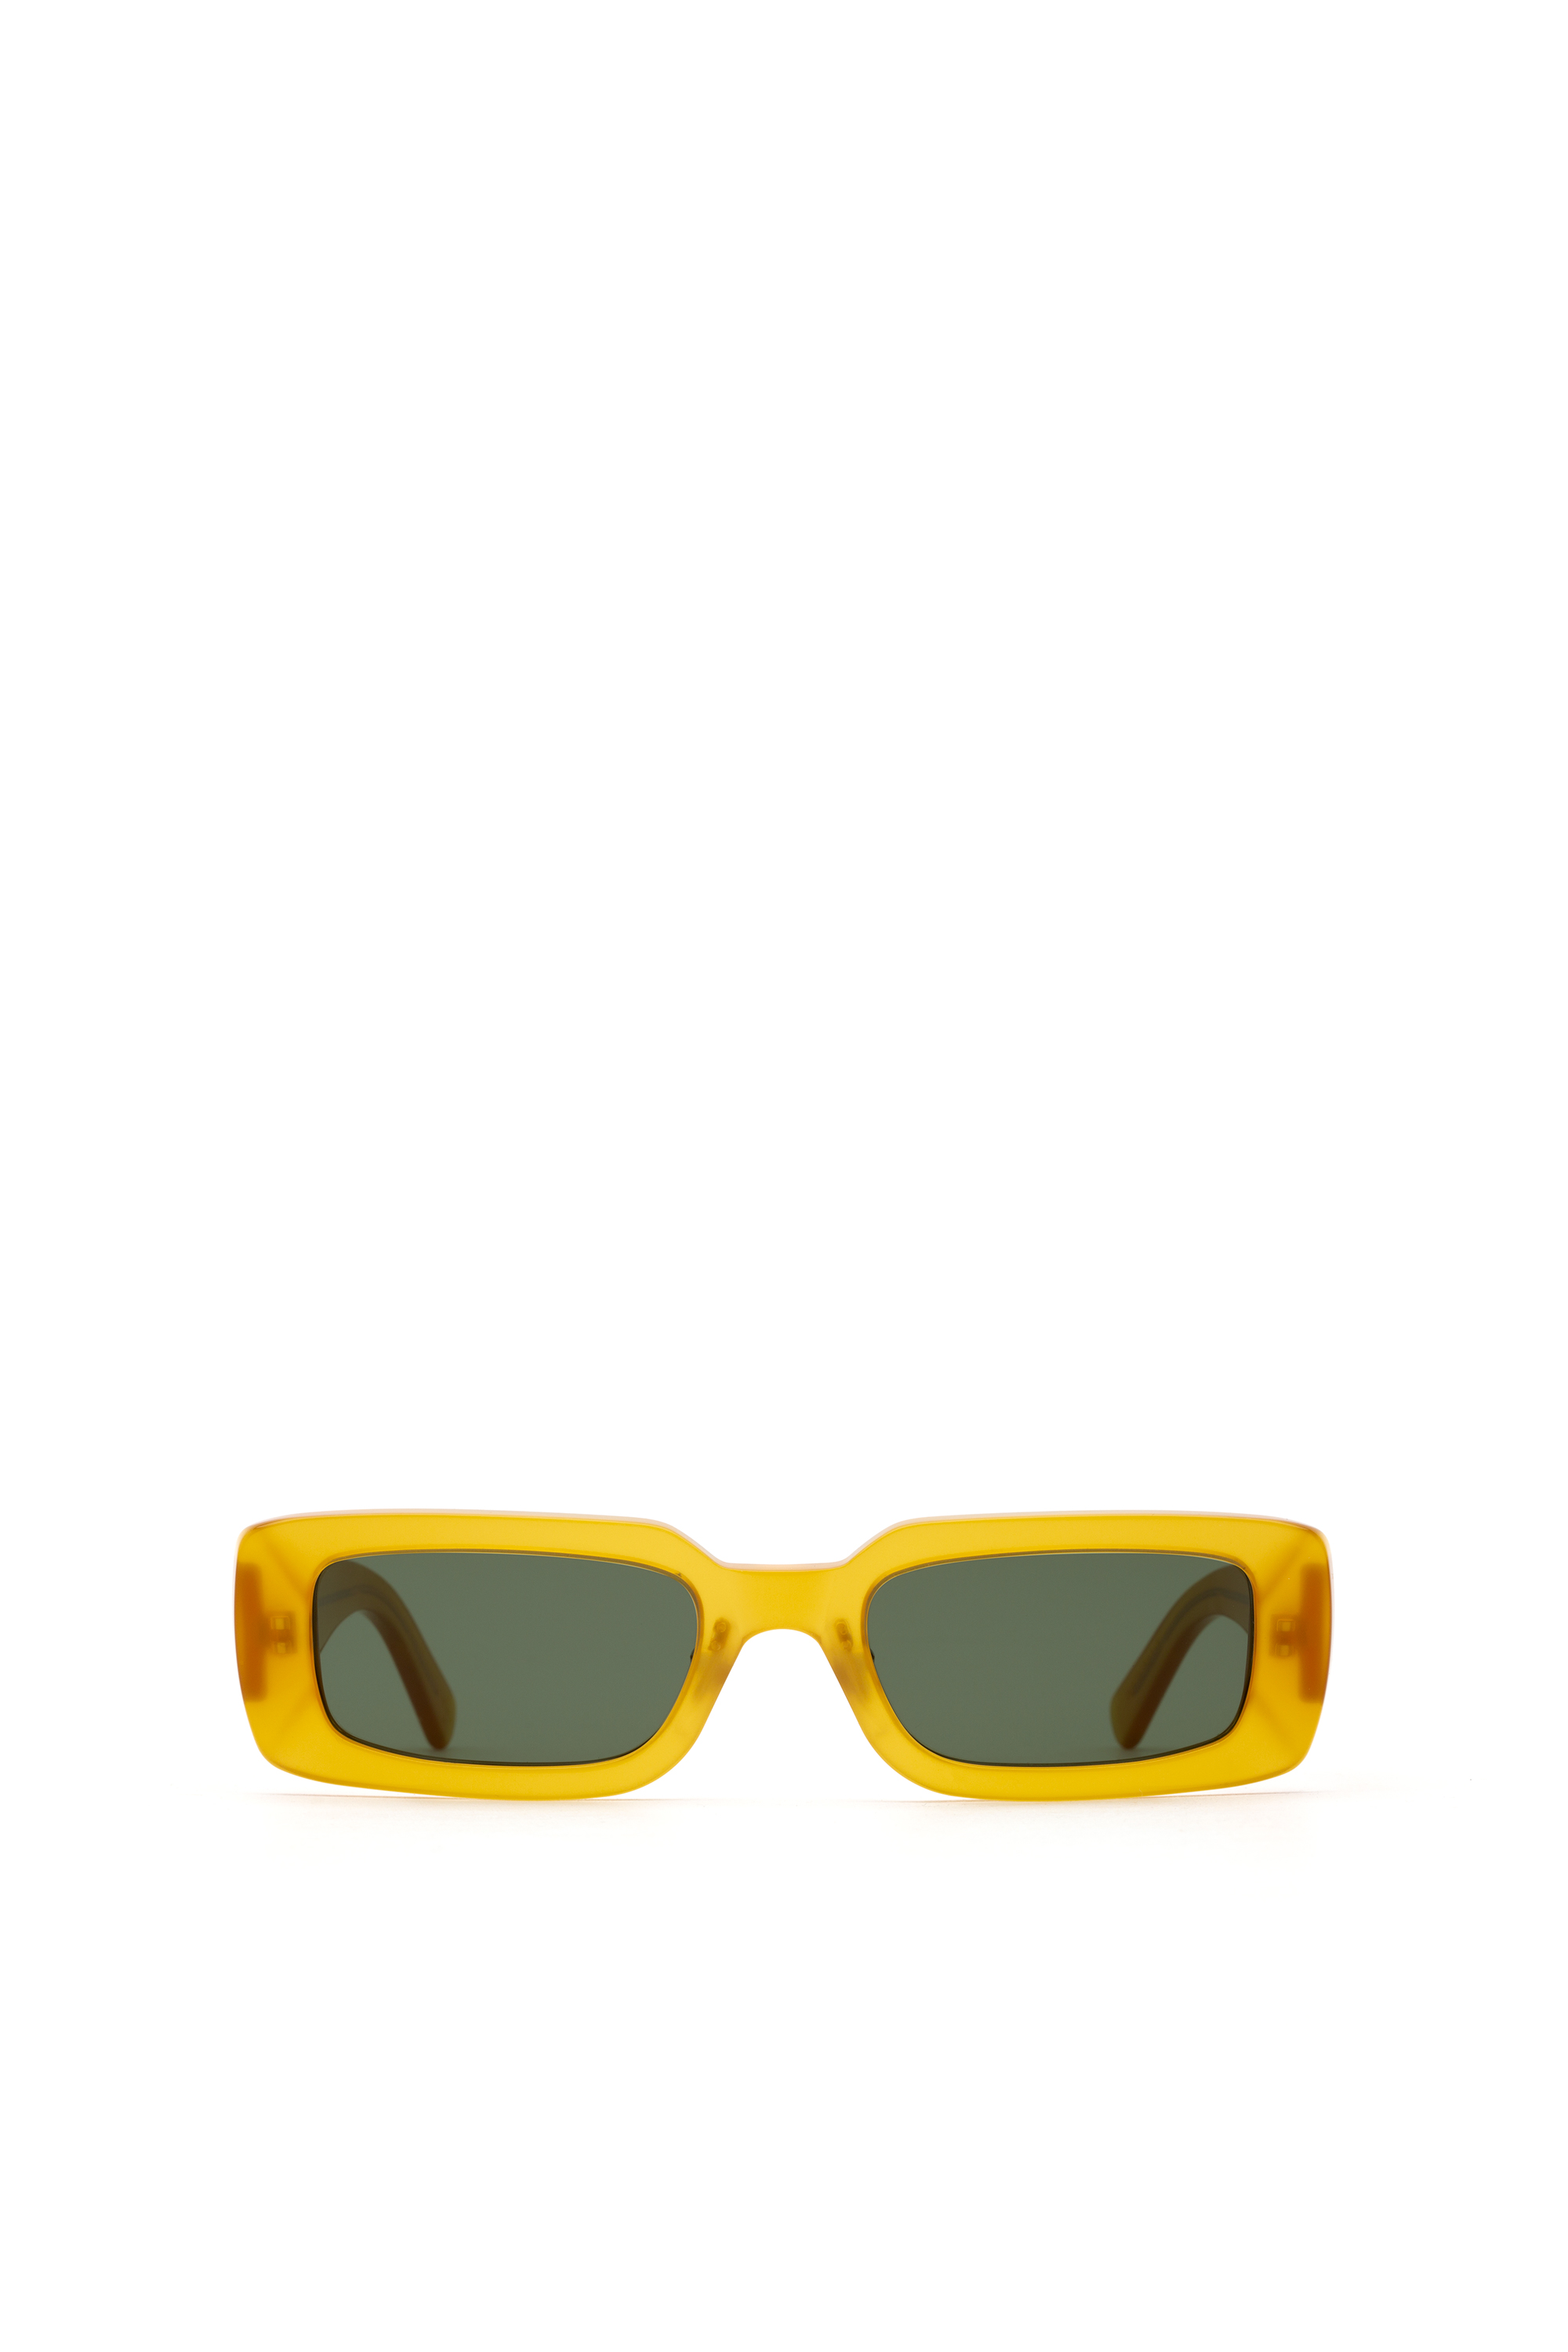 Accessoires Zonnebrillen & Eyewear Leesbrillen Diesel leesbril van 0,25 tot 3,50 mat zwart grijs rond Dl5177 002 